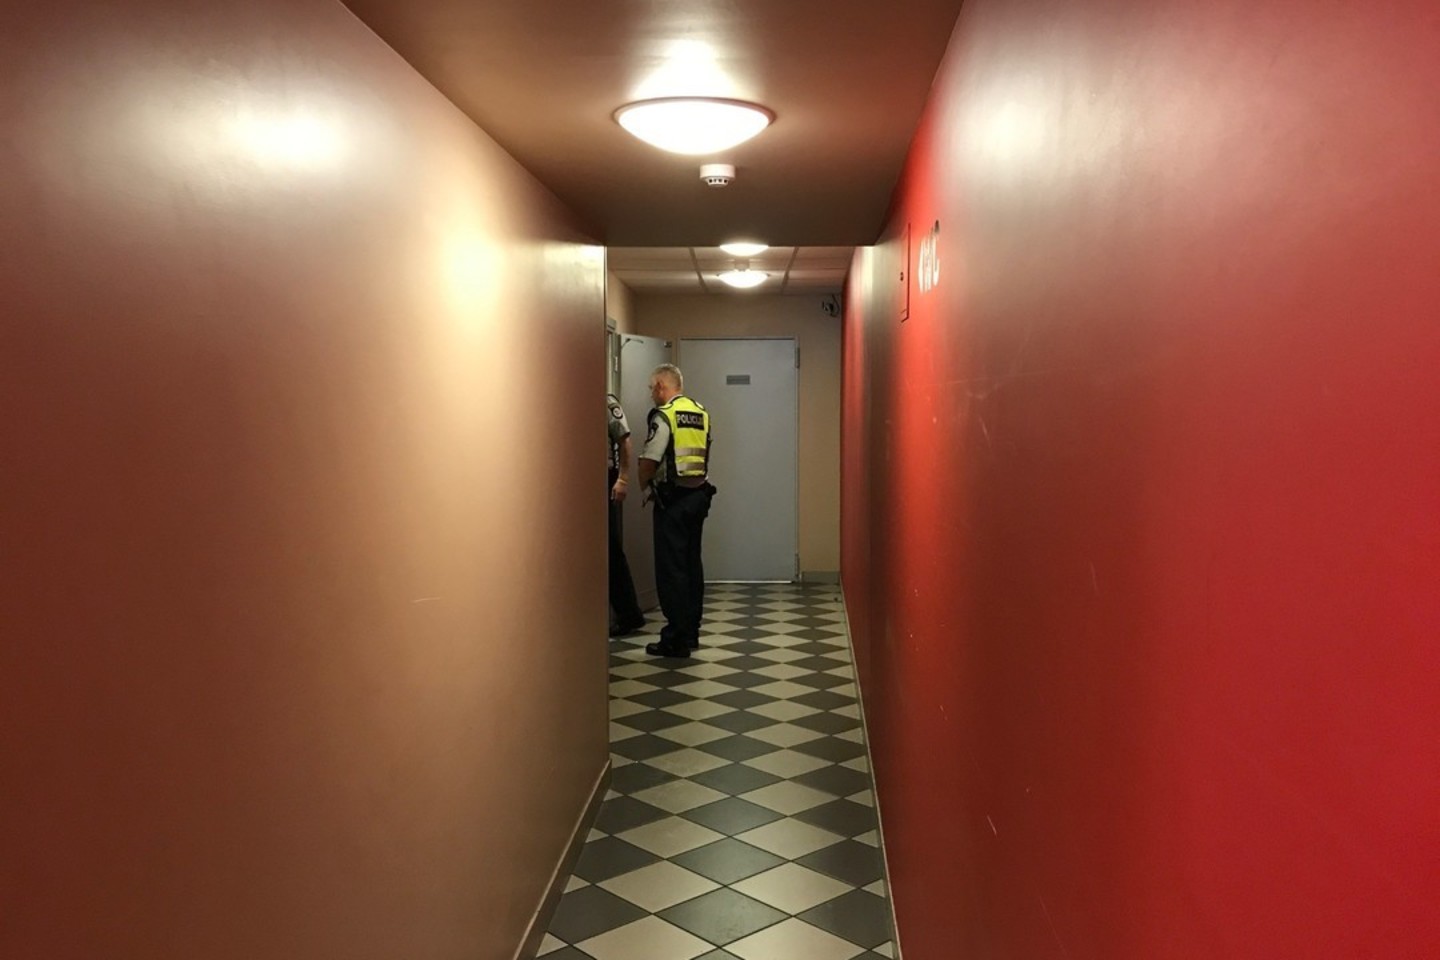  Restorano tualete Vilniaus centre rastas vyras galėjo mirti nuo narkotikų.<br>Įvykio liudininko nuotr.